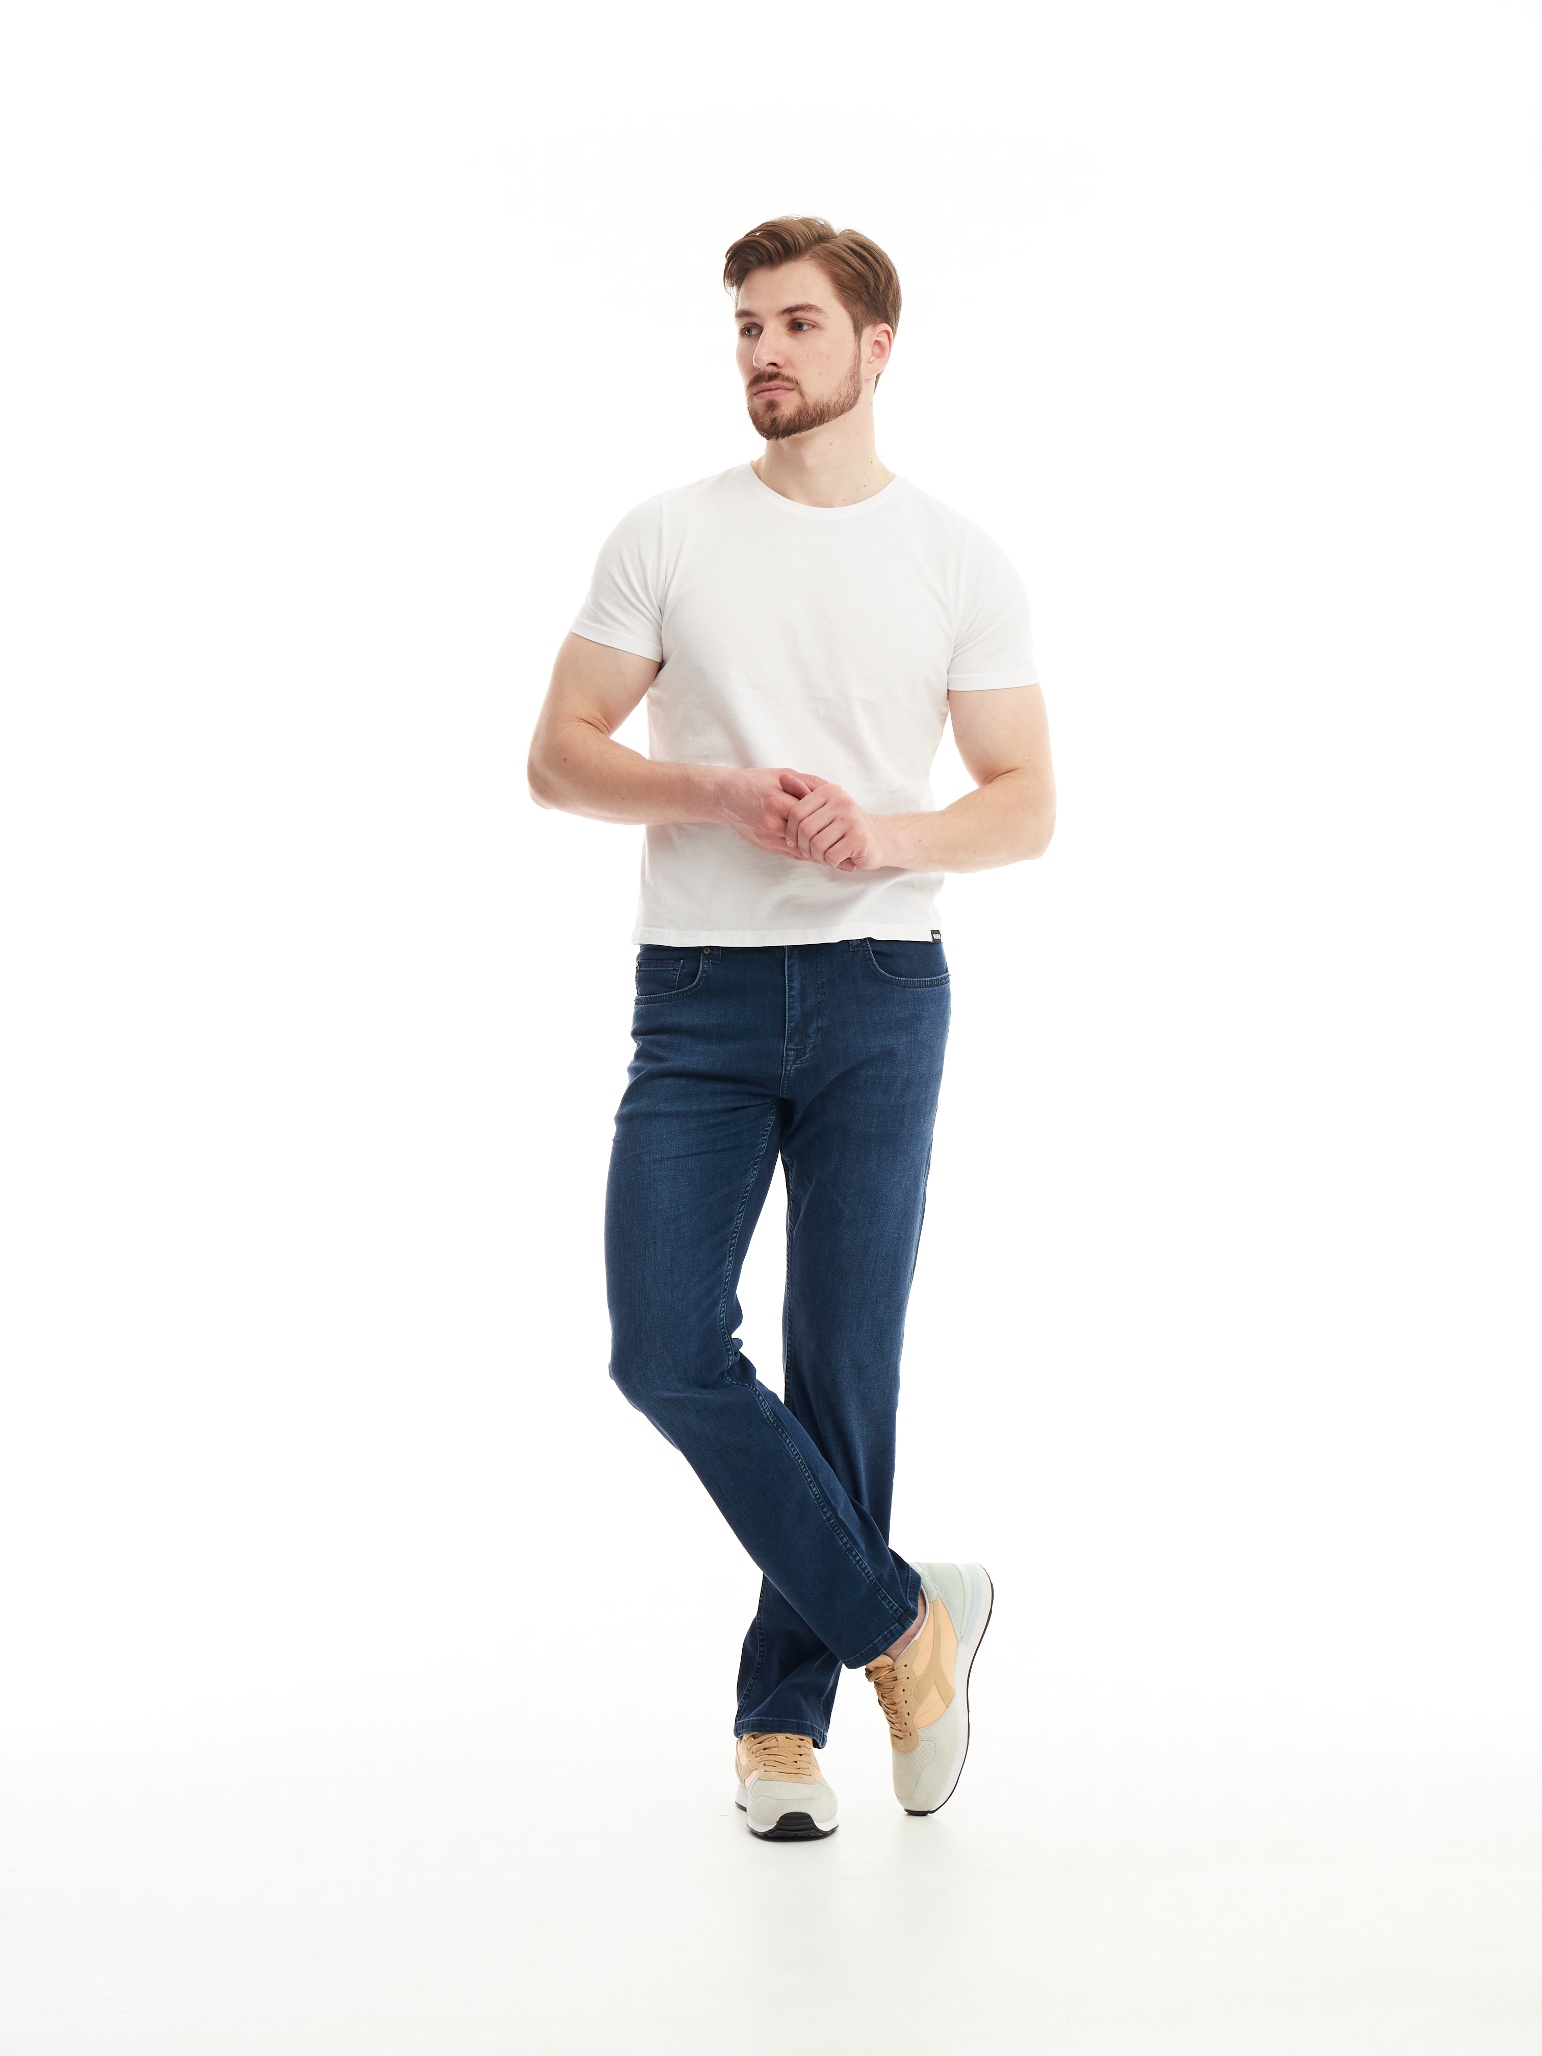 Чоловічі джинси Regular MAGNUS 1112 | Men's jeans Regular MAGNUS 1112